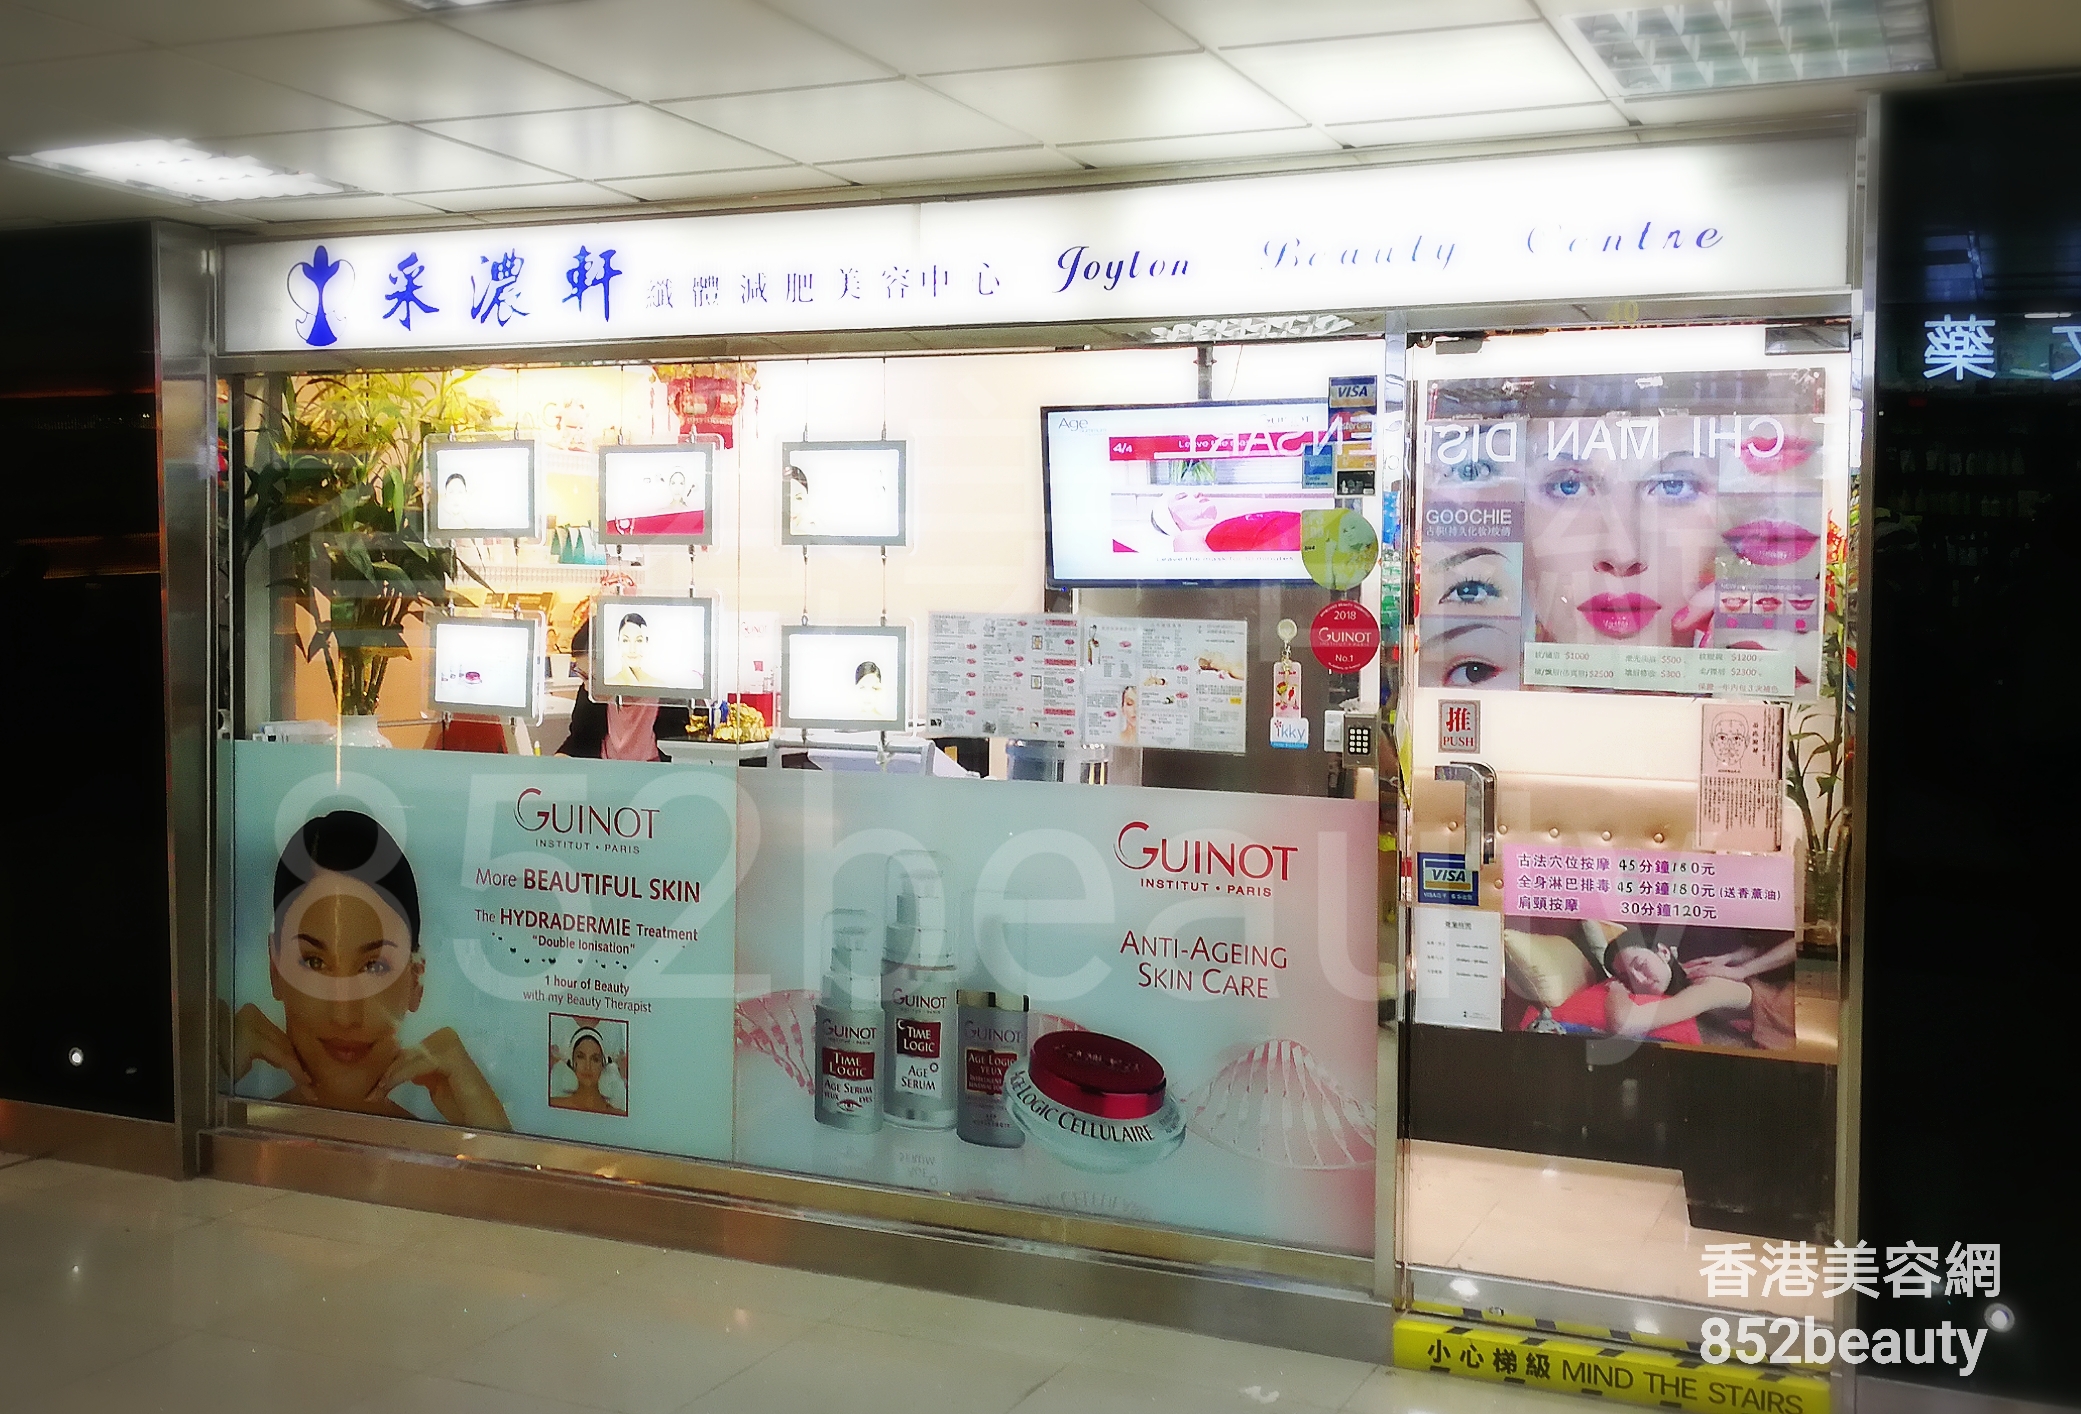 香港美容網 Hong Kong Beauty Salon 美容院 / 美容師: 采濃軒美容中心 (沙田總店)